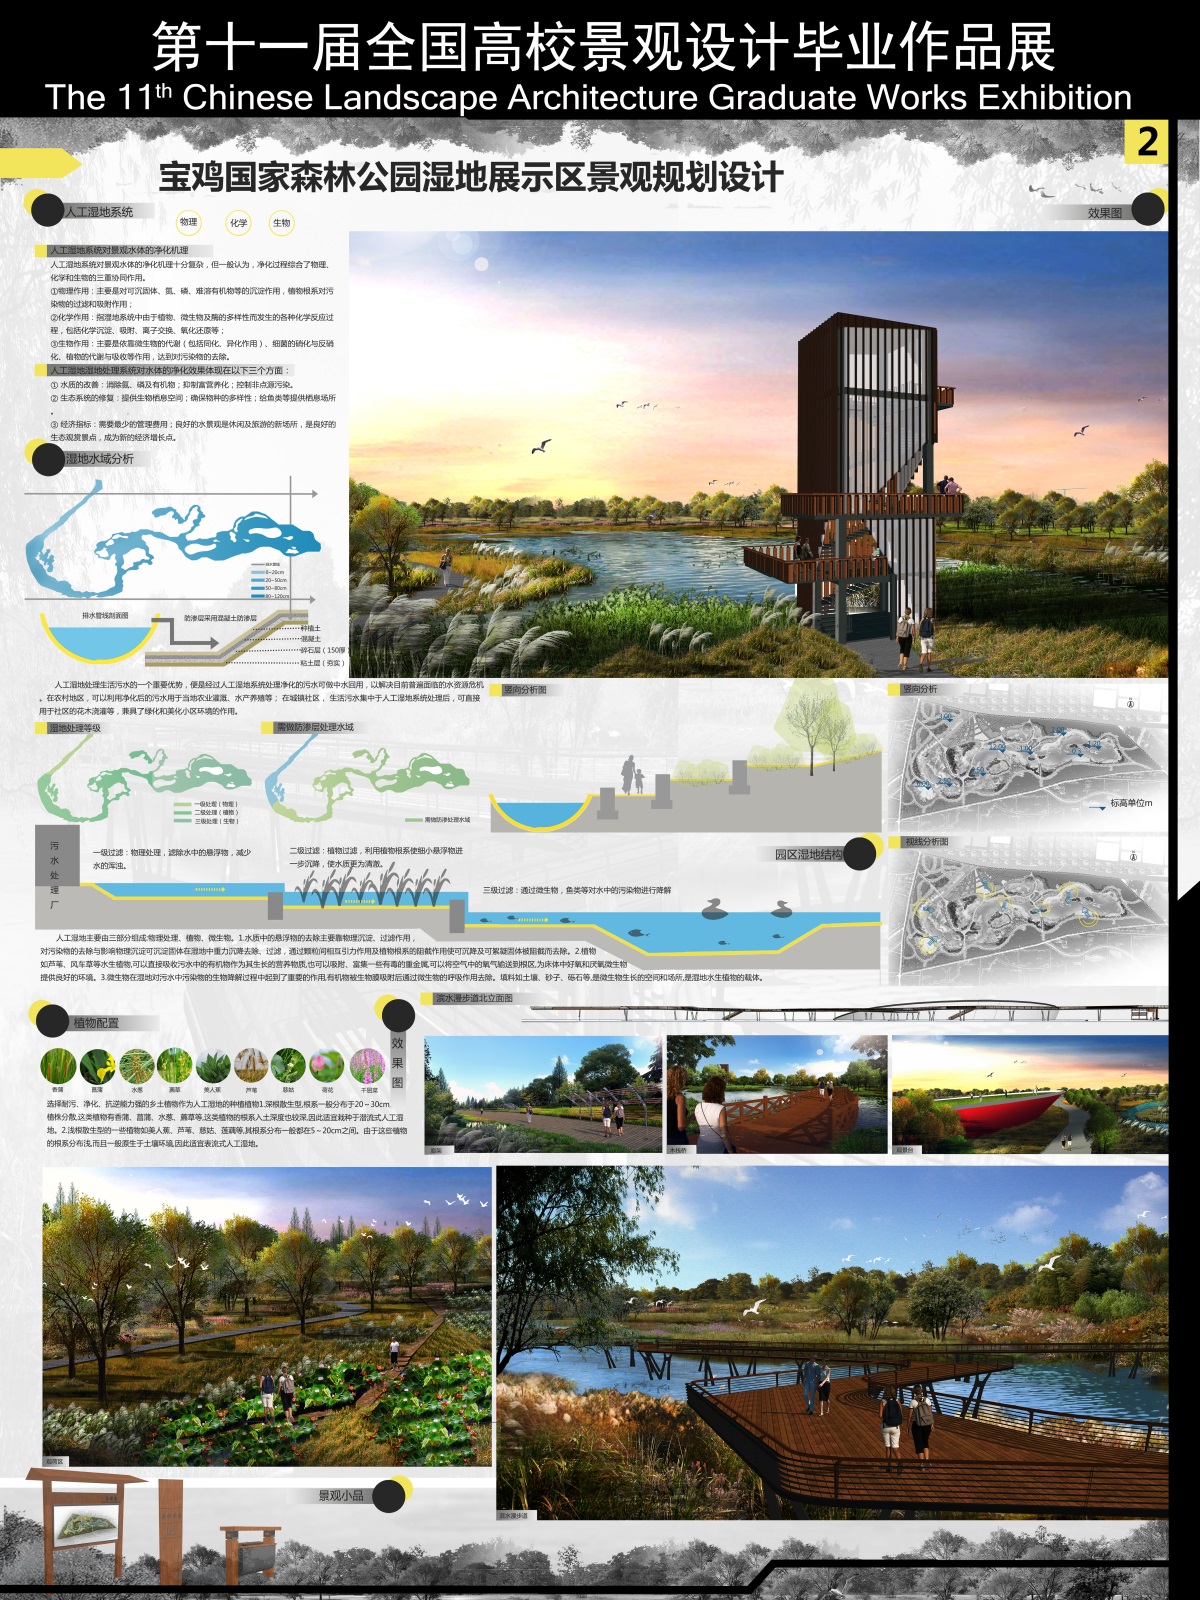 宝鸡国家森林公园湿地展示区景观规划设计-2